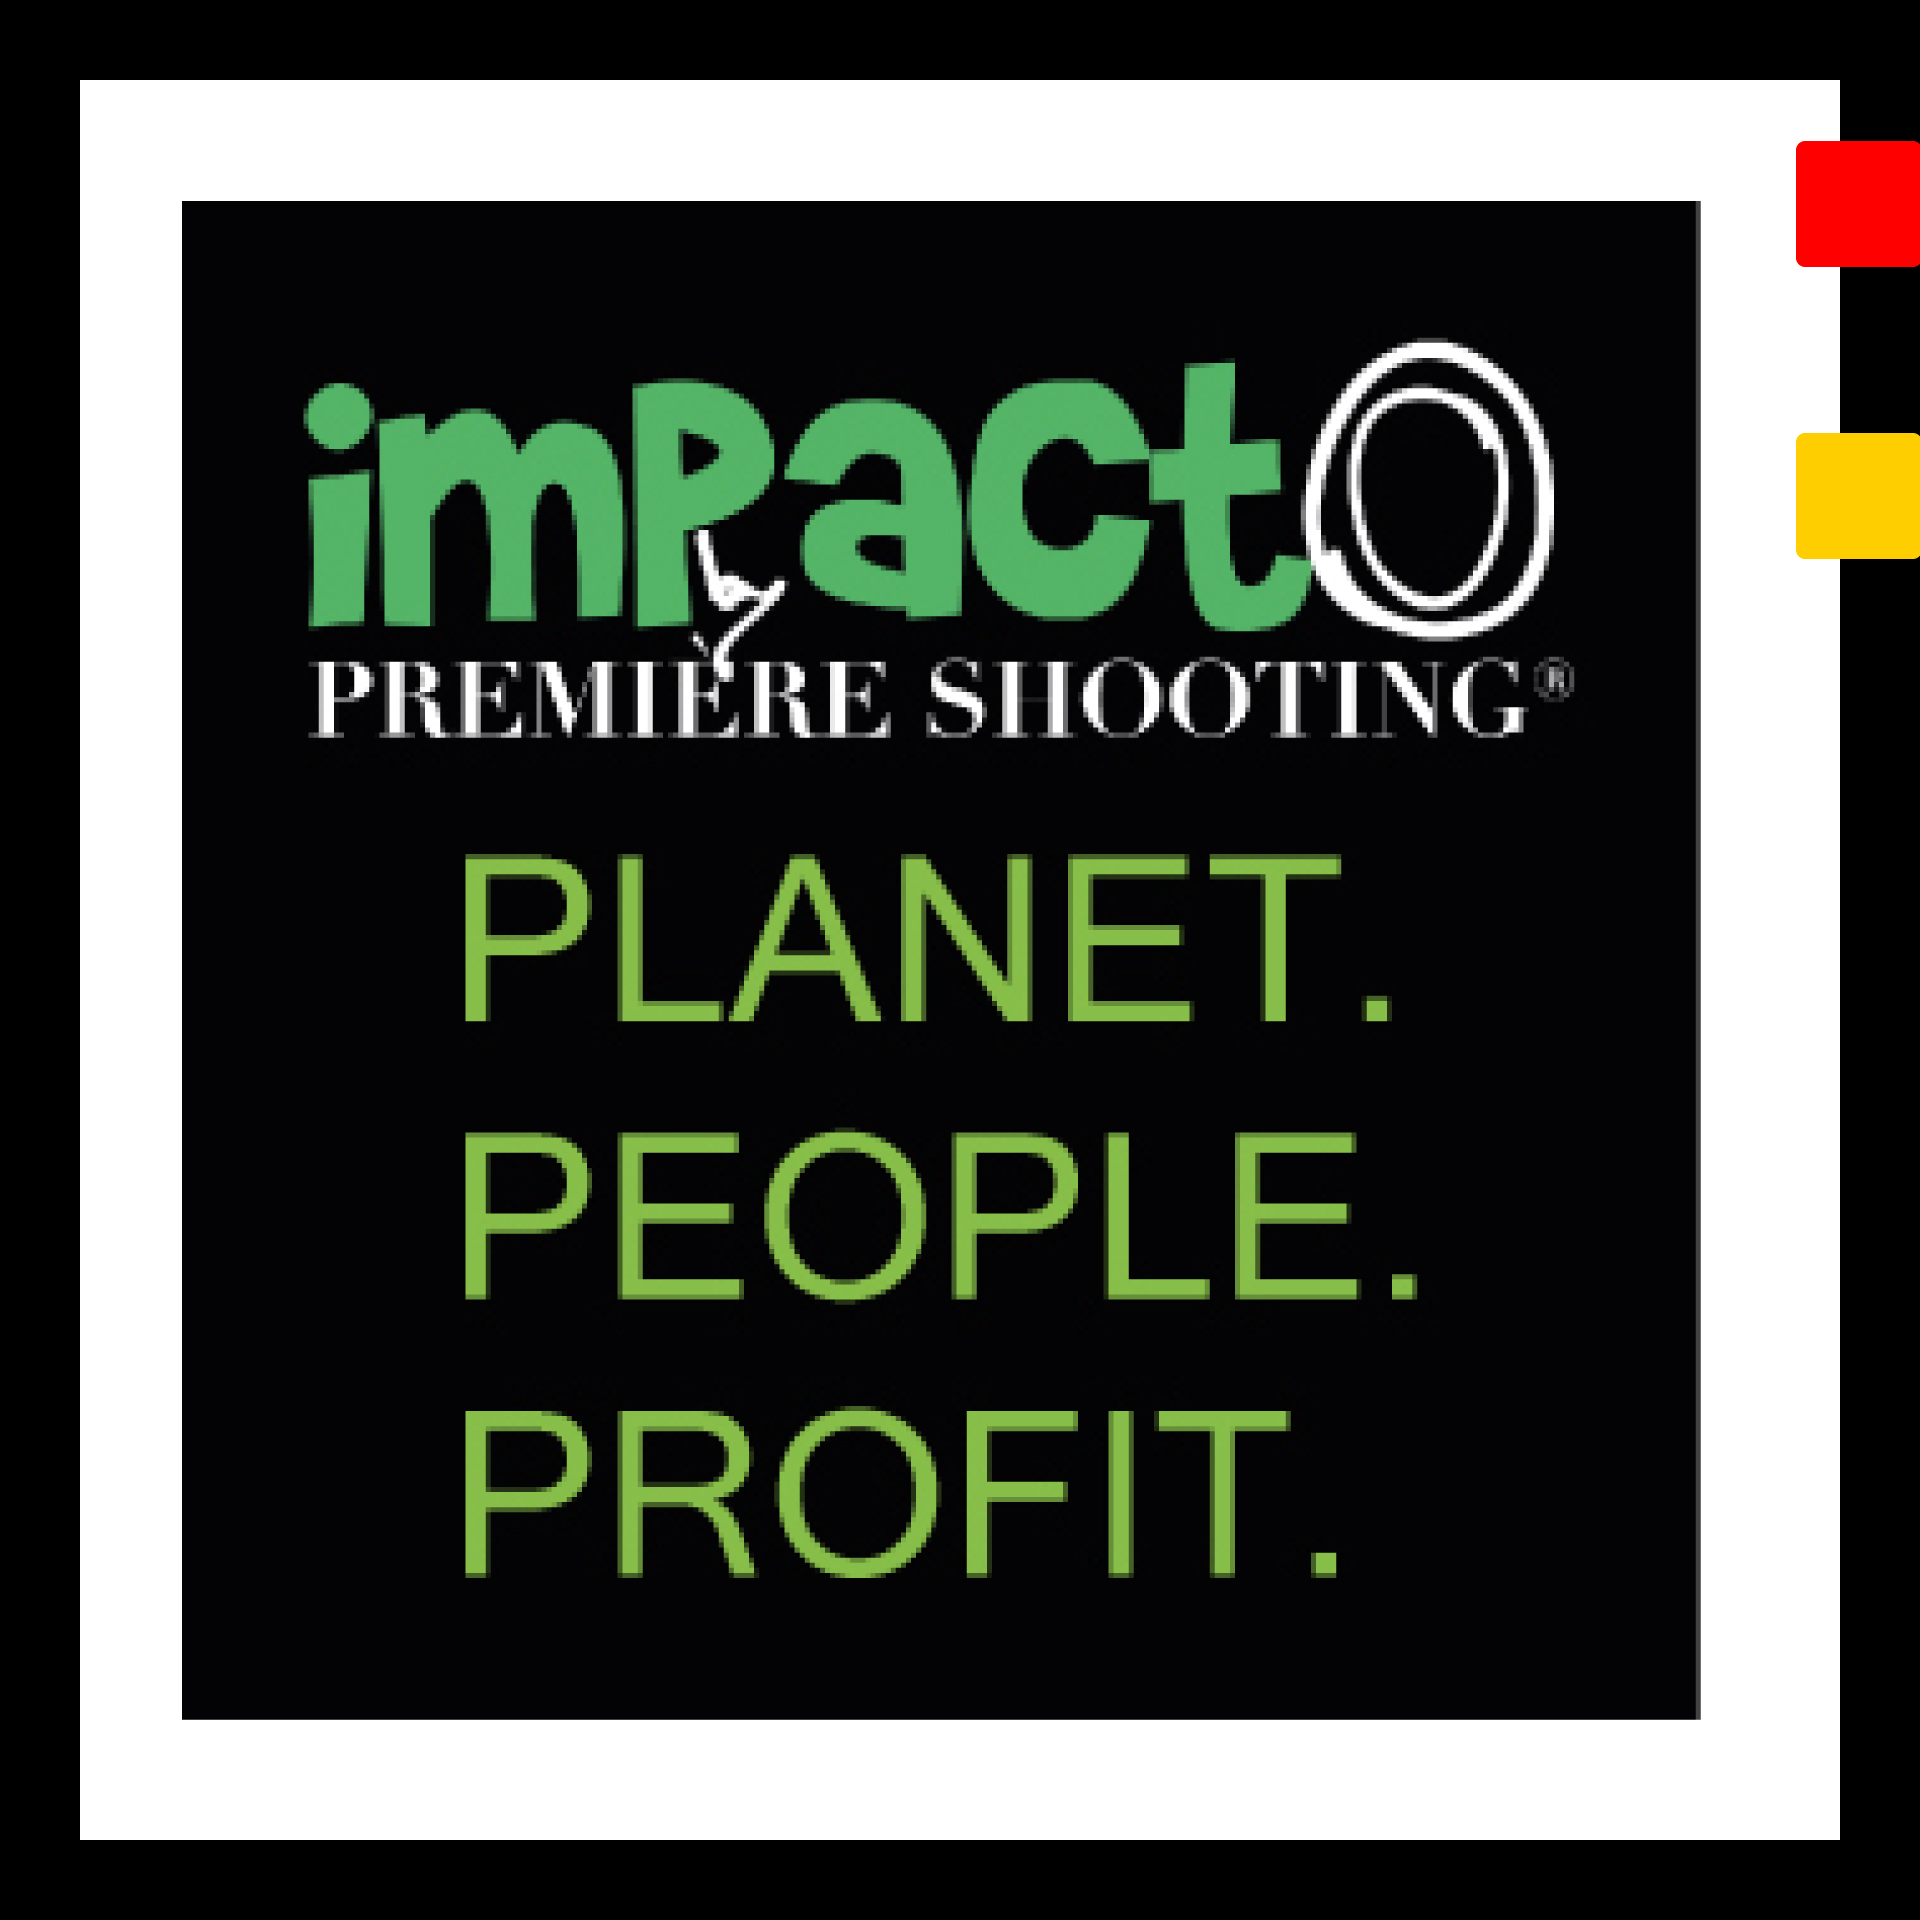 Impact0 by Première Shooting planet people profit splash screen